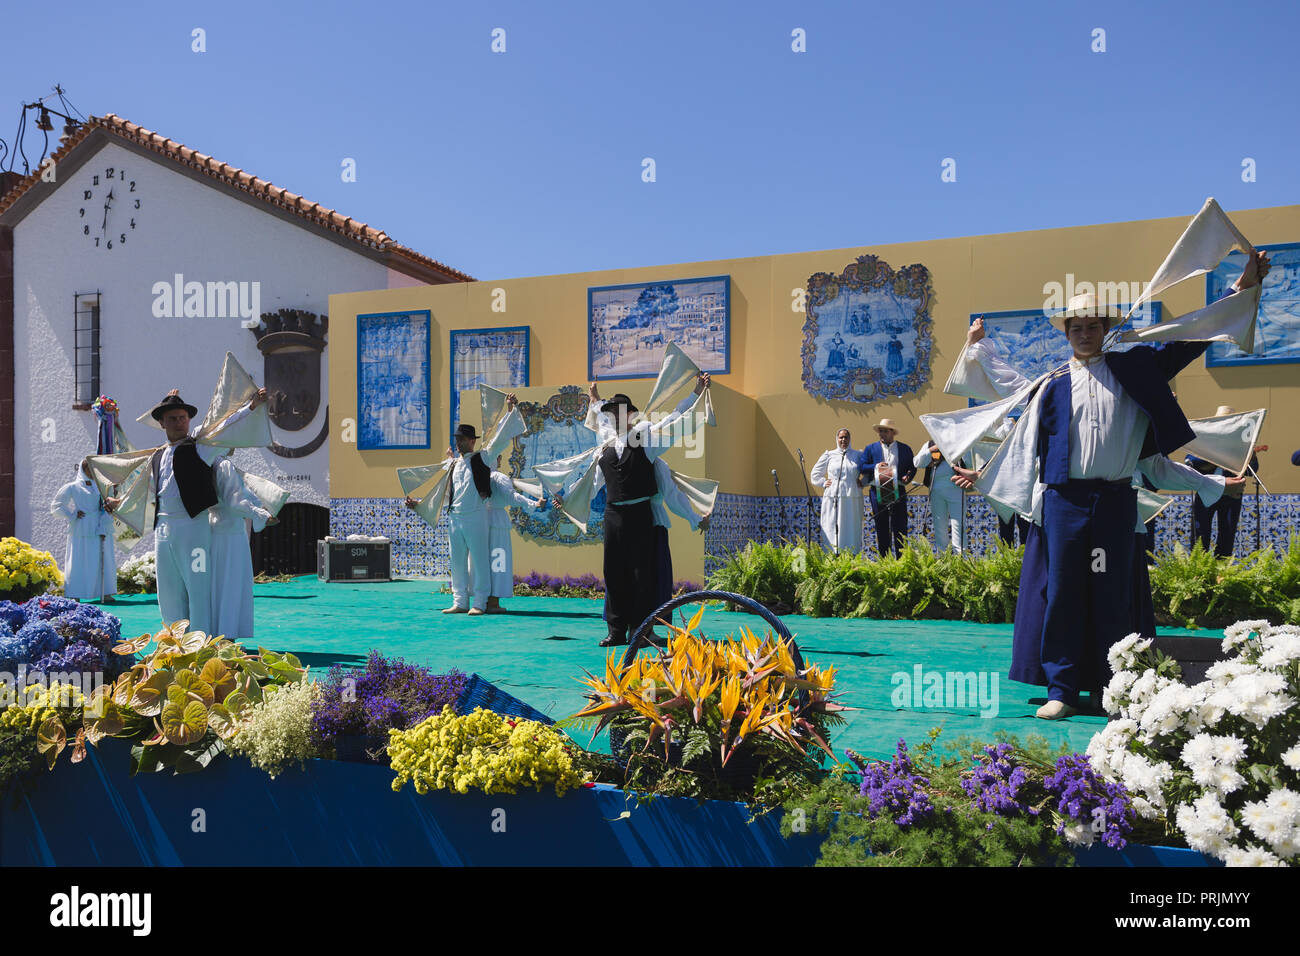 Gruppo di folklore dell'isola di Madeira perfoming a '24 horas a bailar' festival nella città di Santana, Isola di Madeira, Portogallo, luglio 2017. Foto Stock